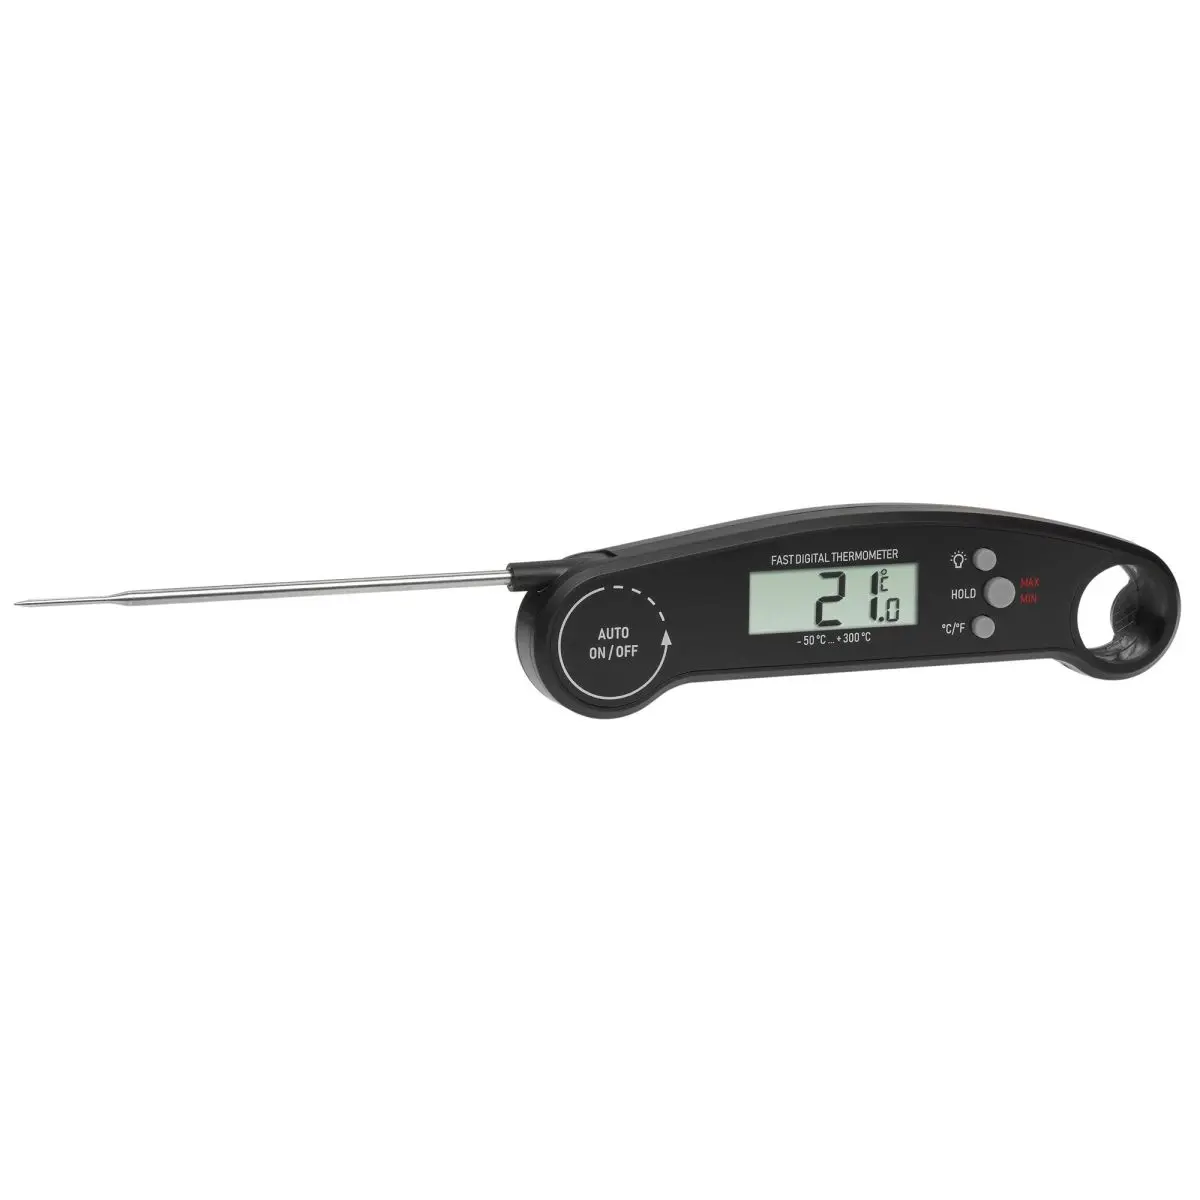 Digitales Kchen-Thermometer - mit Batterie